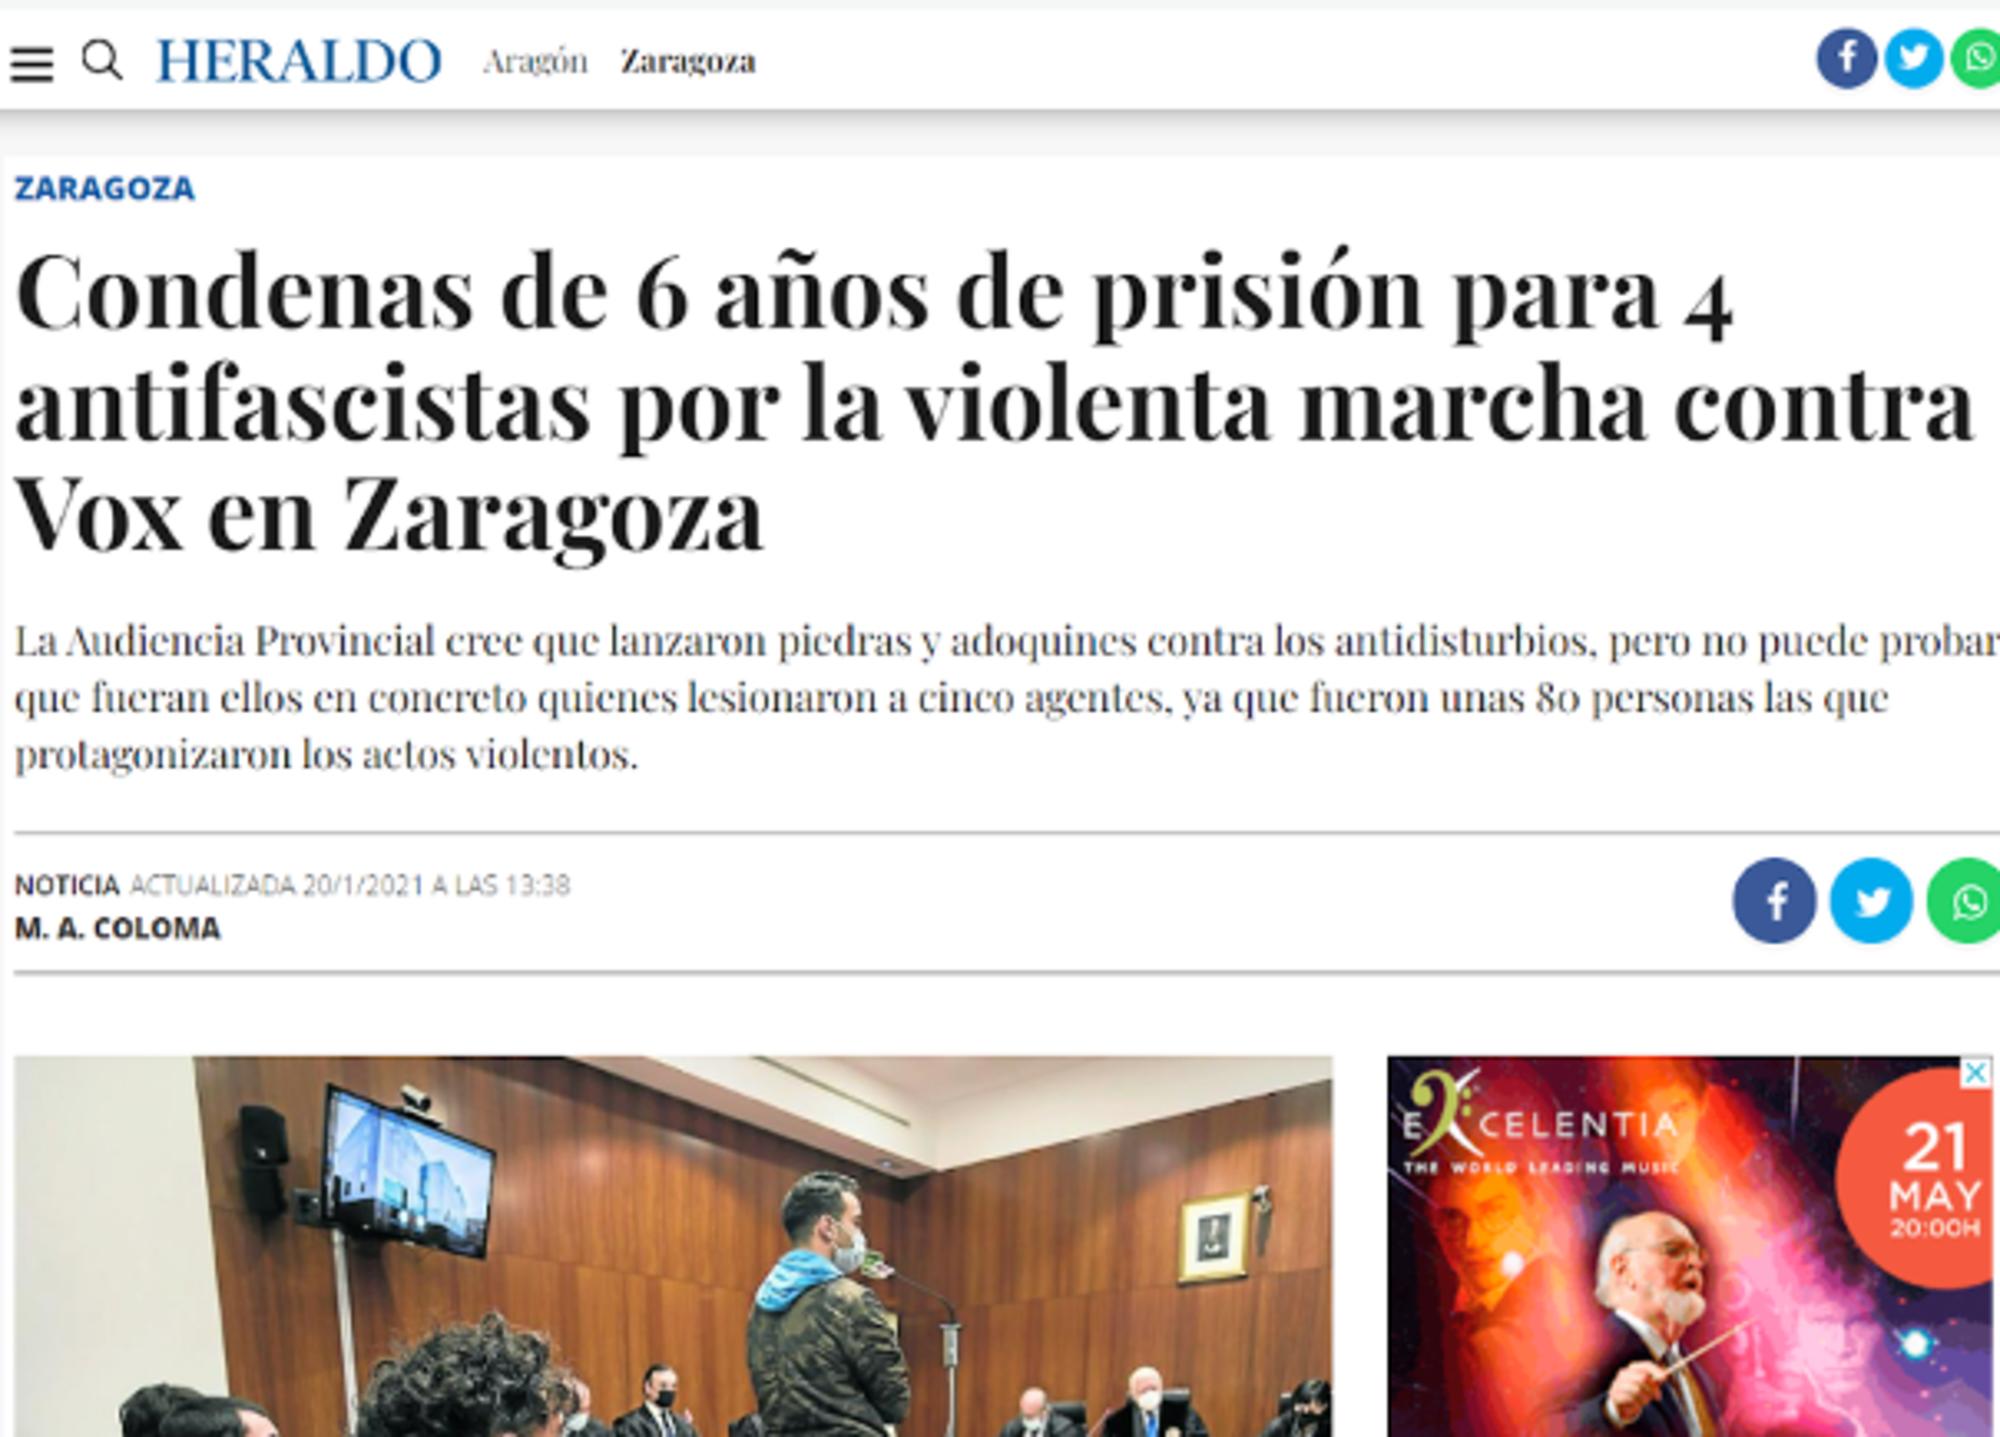 Noticia publicada en el Heraldo de Aragón el 20 de enero de 2021